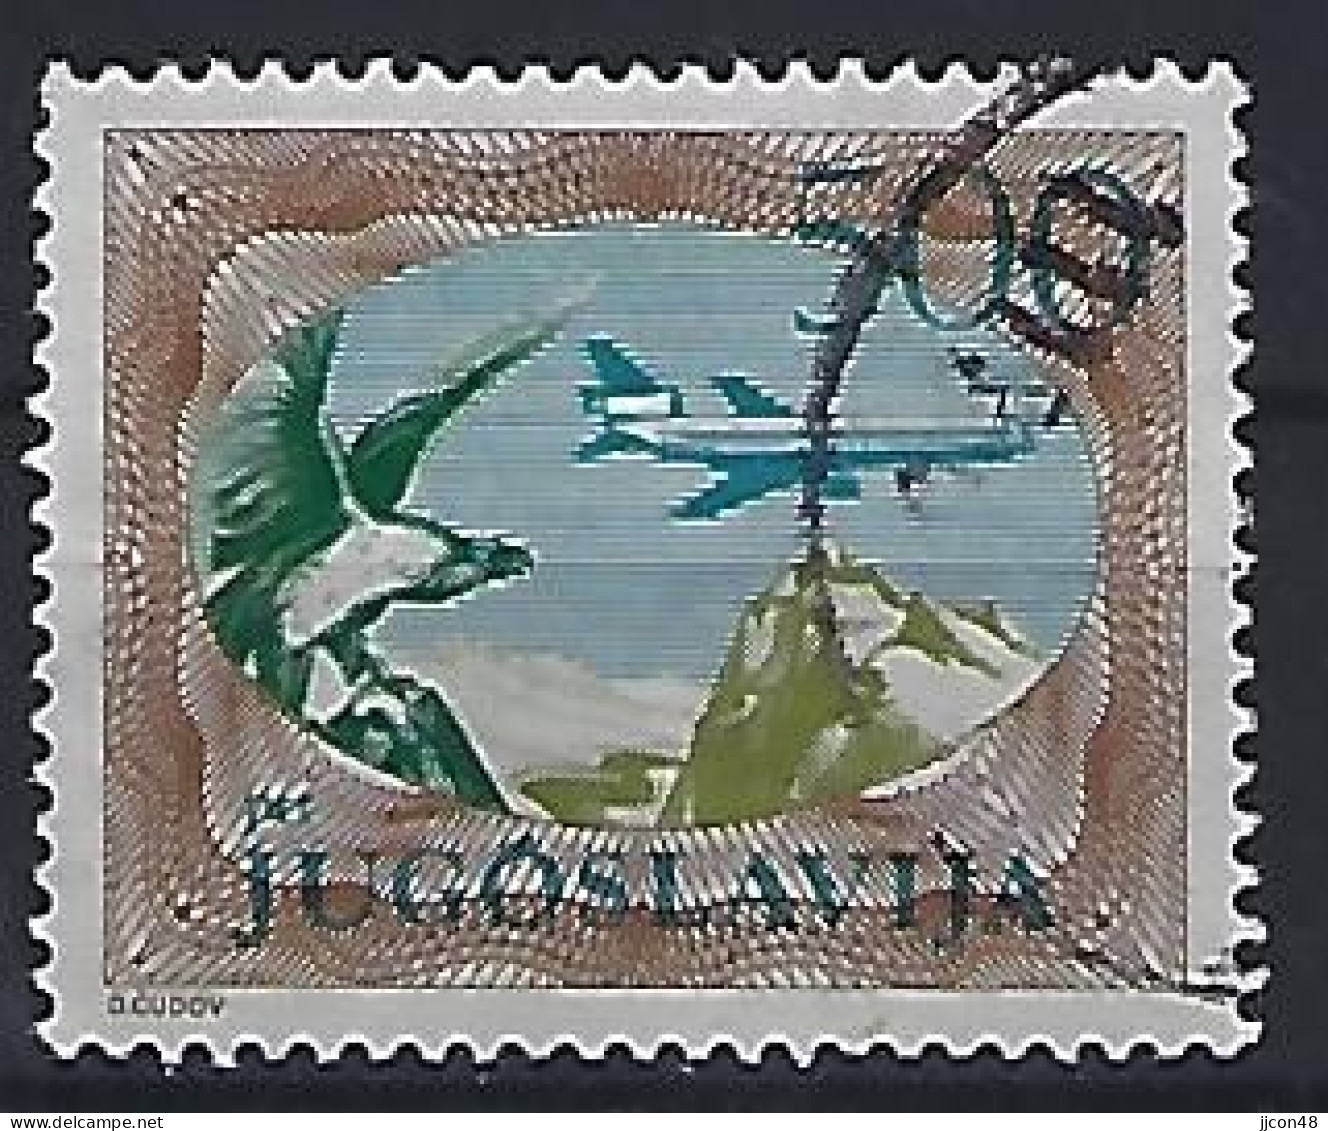 Jugoslavia 1985  Flugpostmarken (o) Mi.2098 A - Oblitérés